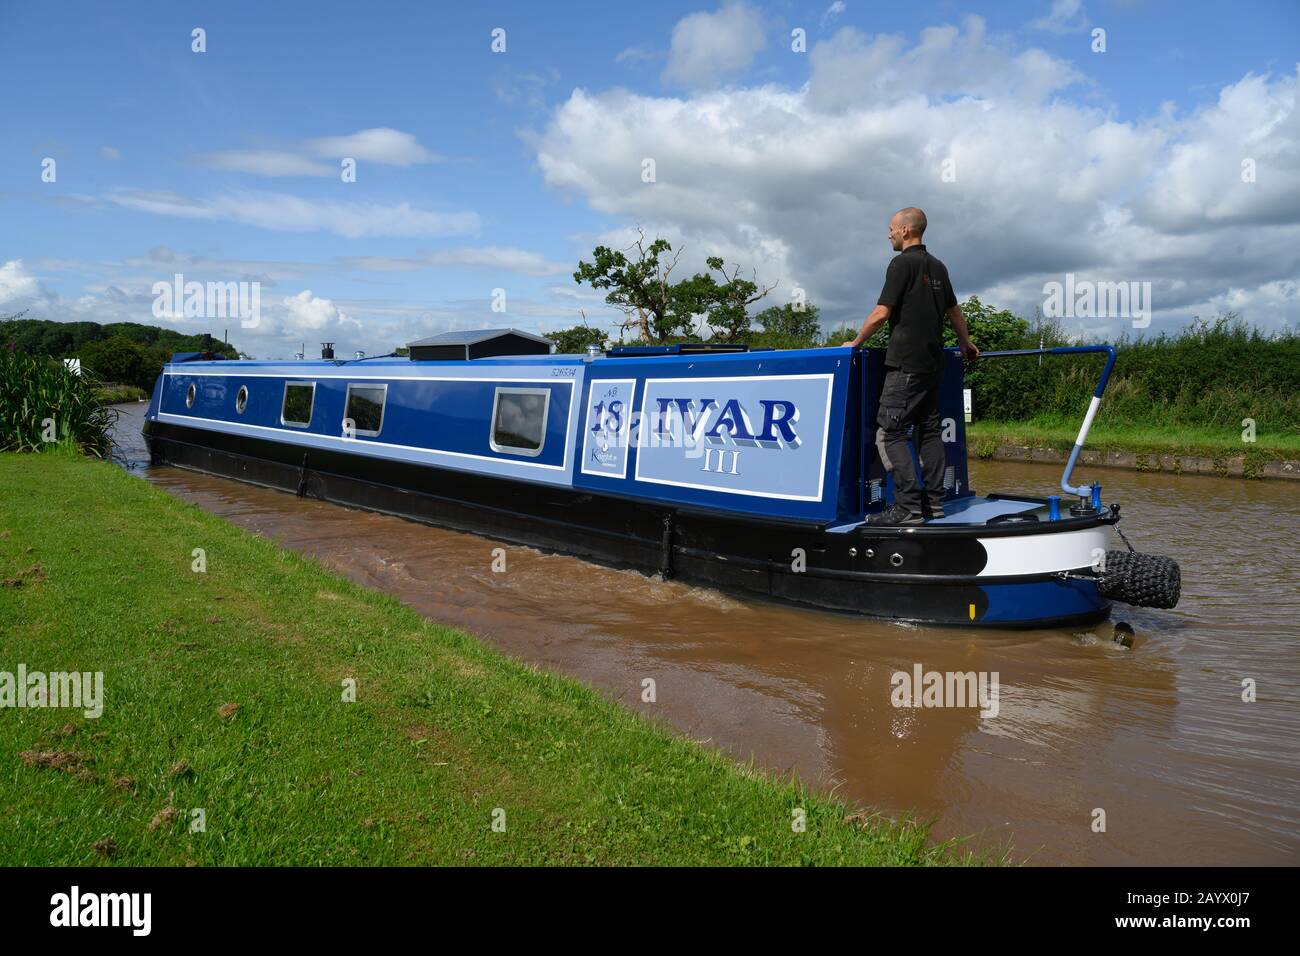 Narrowboat nannte Ivar III, der den Shropshire Union Canal in Cheshire bei strahlendem Sonnenschein und unter blauem Himmel mit einem Mann an der Deichsel passiert. Stockfoto